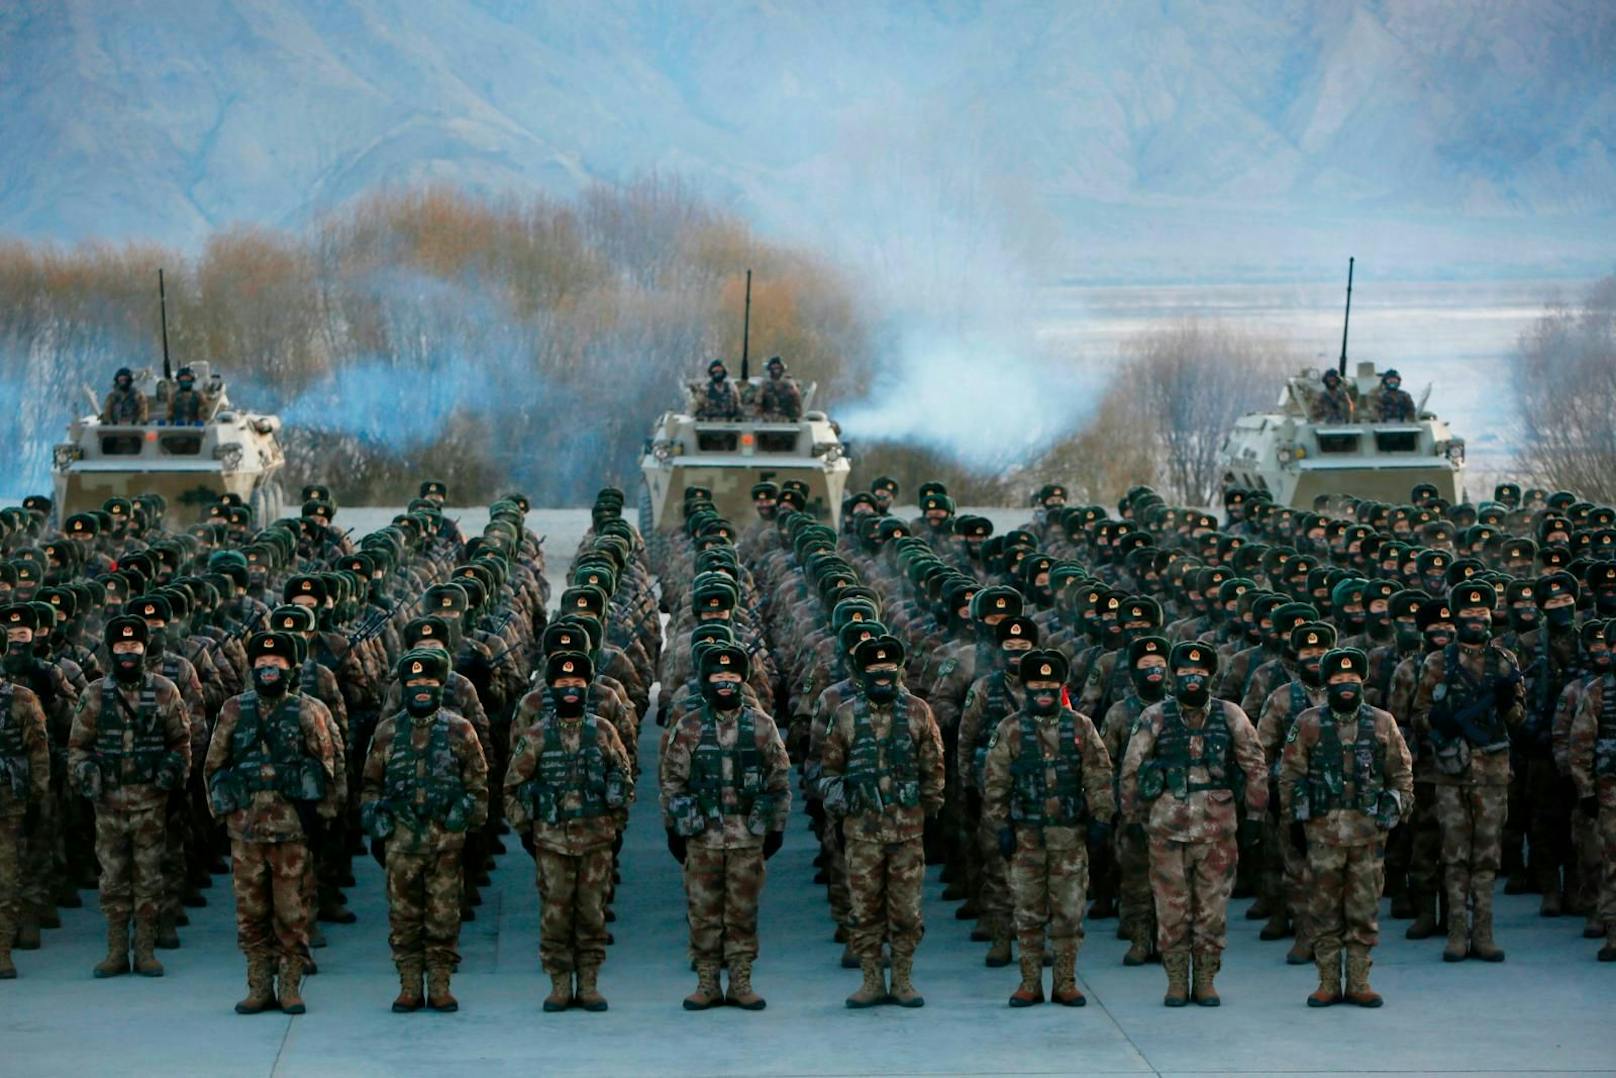 Putin bemüht sich um chinesische Armee im Ukraine-Krieg